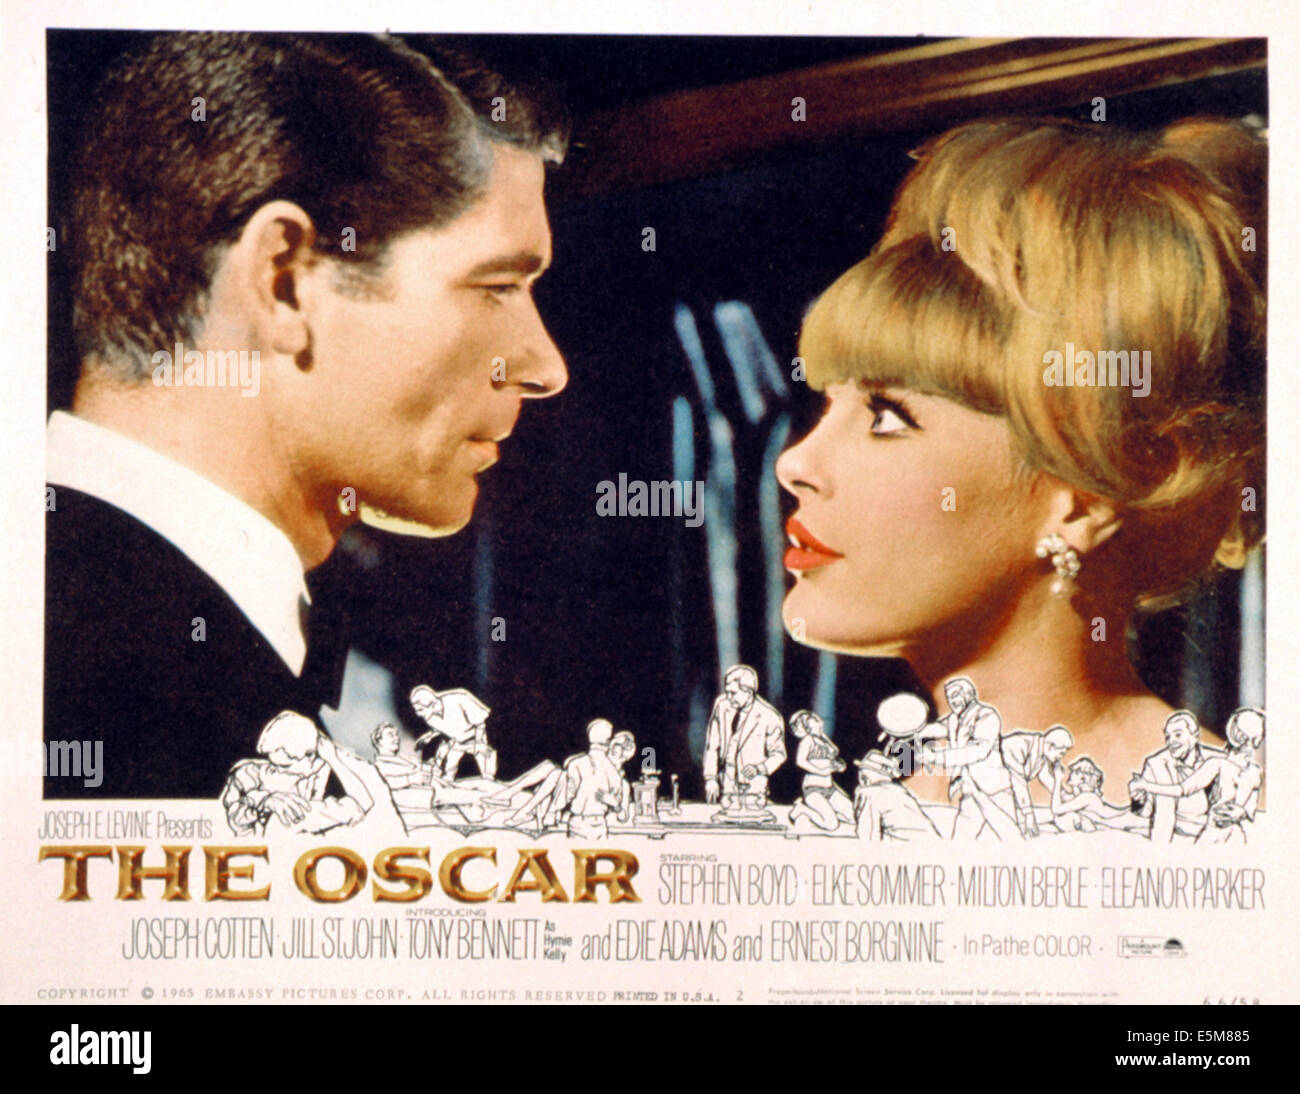 THE OSCAR, Stephen Boyd, Elke Sommer, poster, 1966 Stock Photo